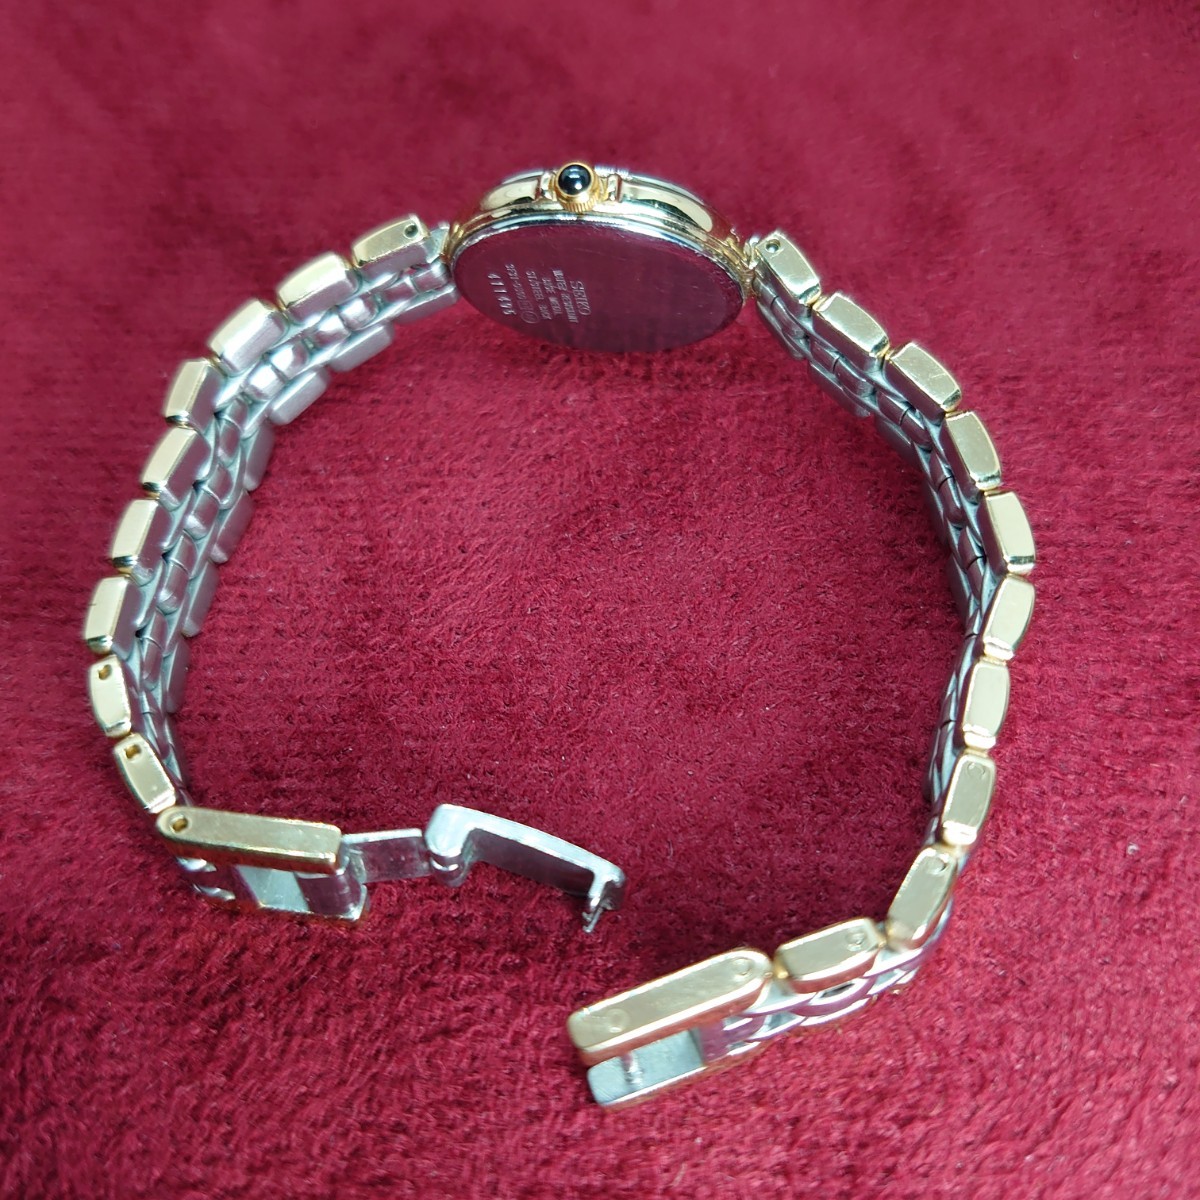 962[ рабочий товар ]SEIKO EXCELINE 3F31-0B60 женские наручные часы Gold × серебряный комбинированный ремень Seiko Exceline белый циферблат 